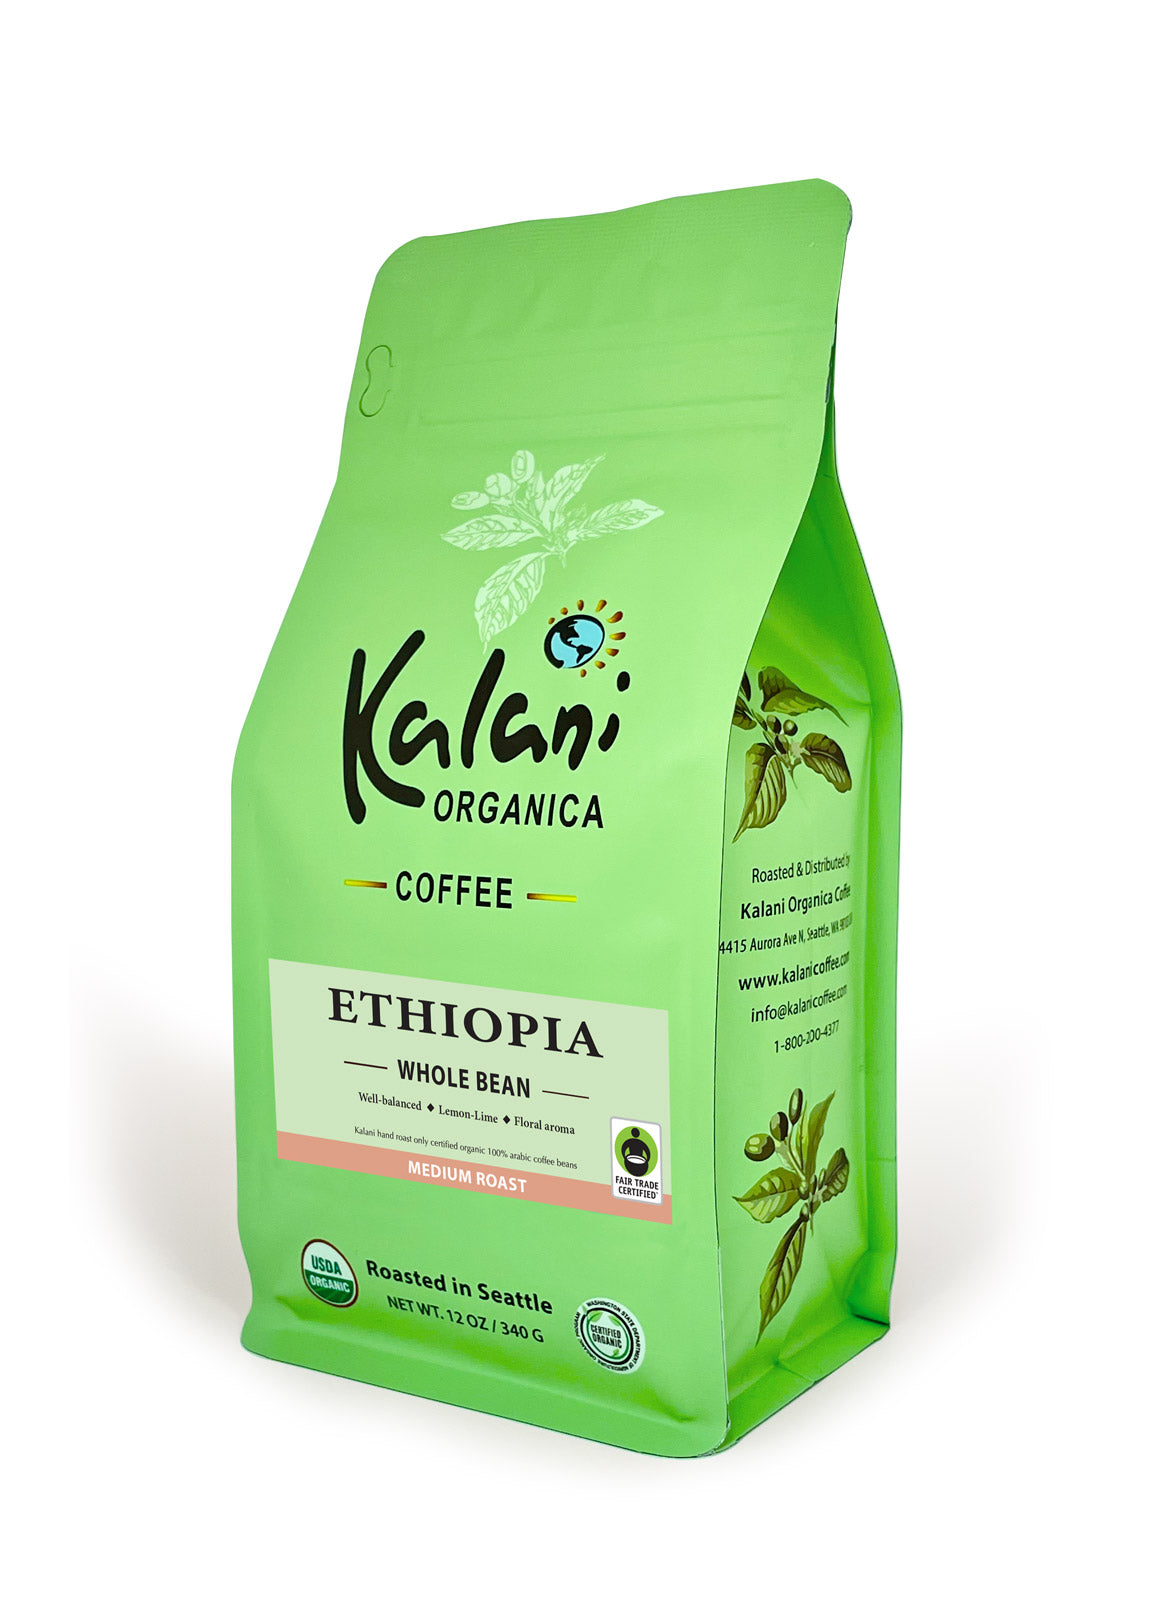 Ethiopia Fair Trade & Organic